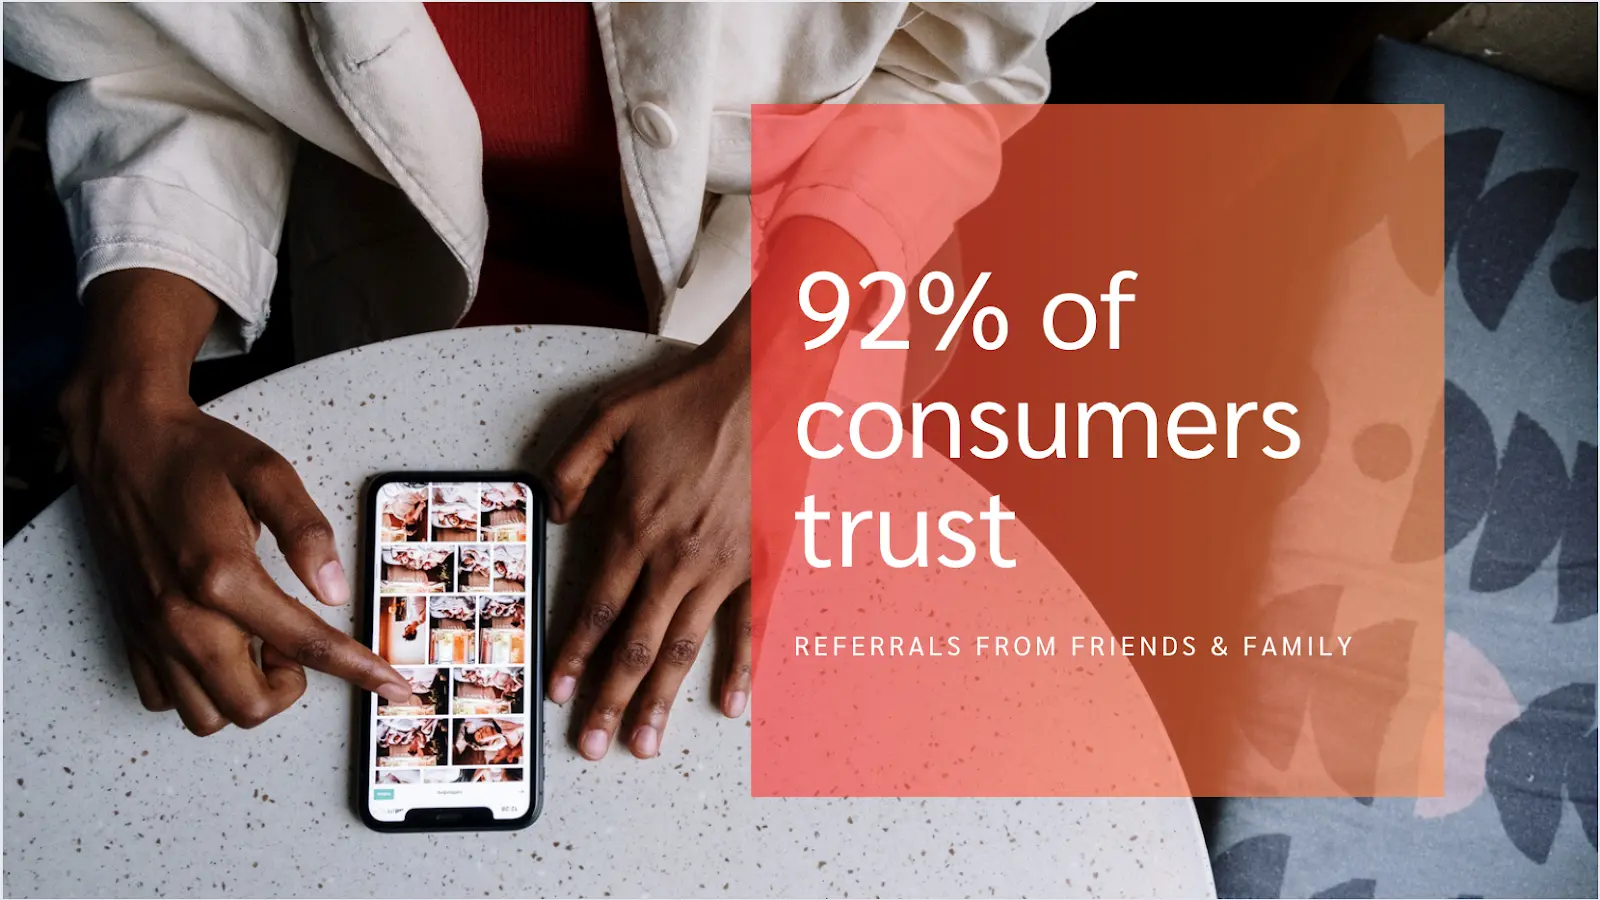 Consumer trust statistics